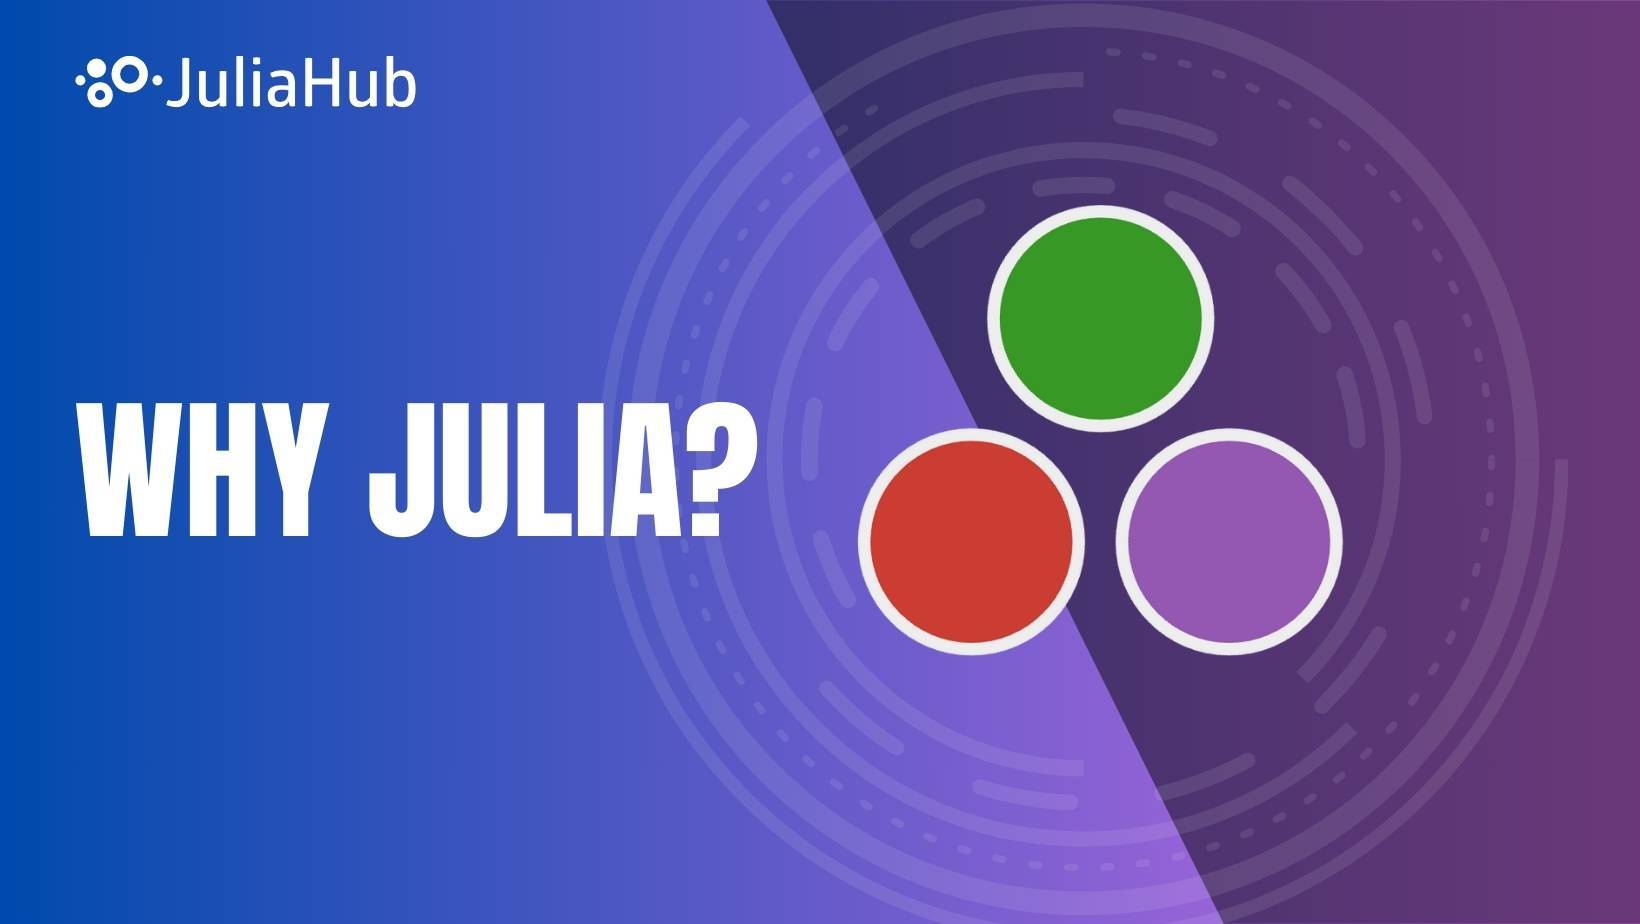 Why Julia?